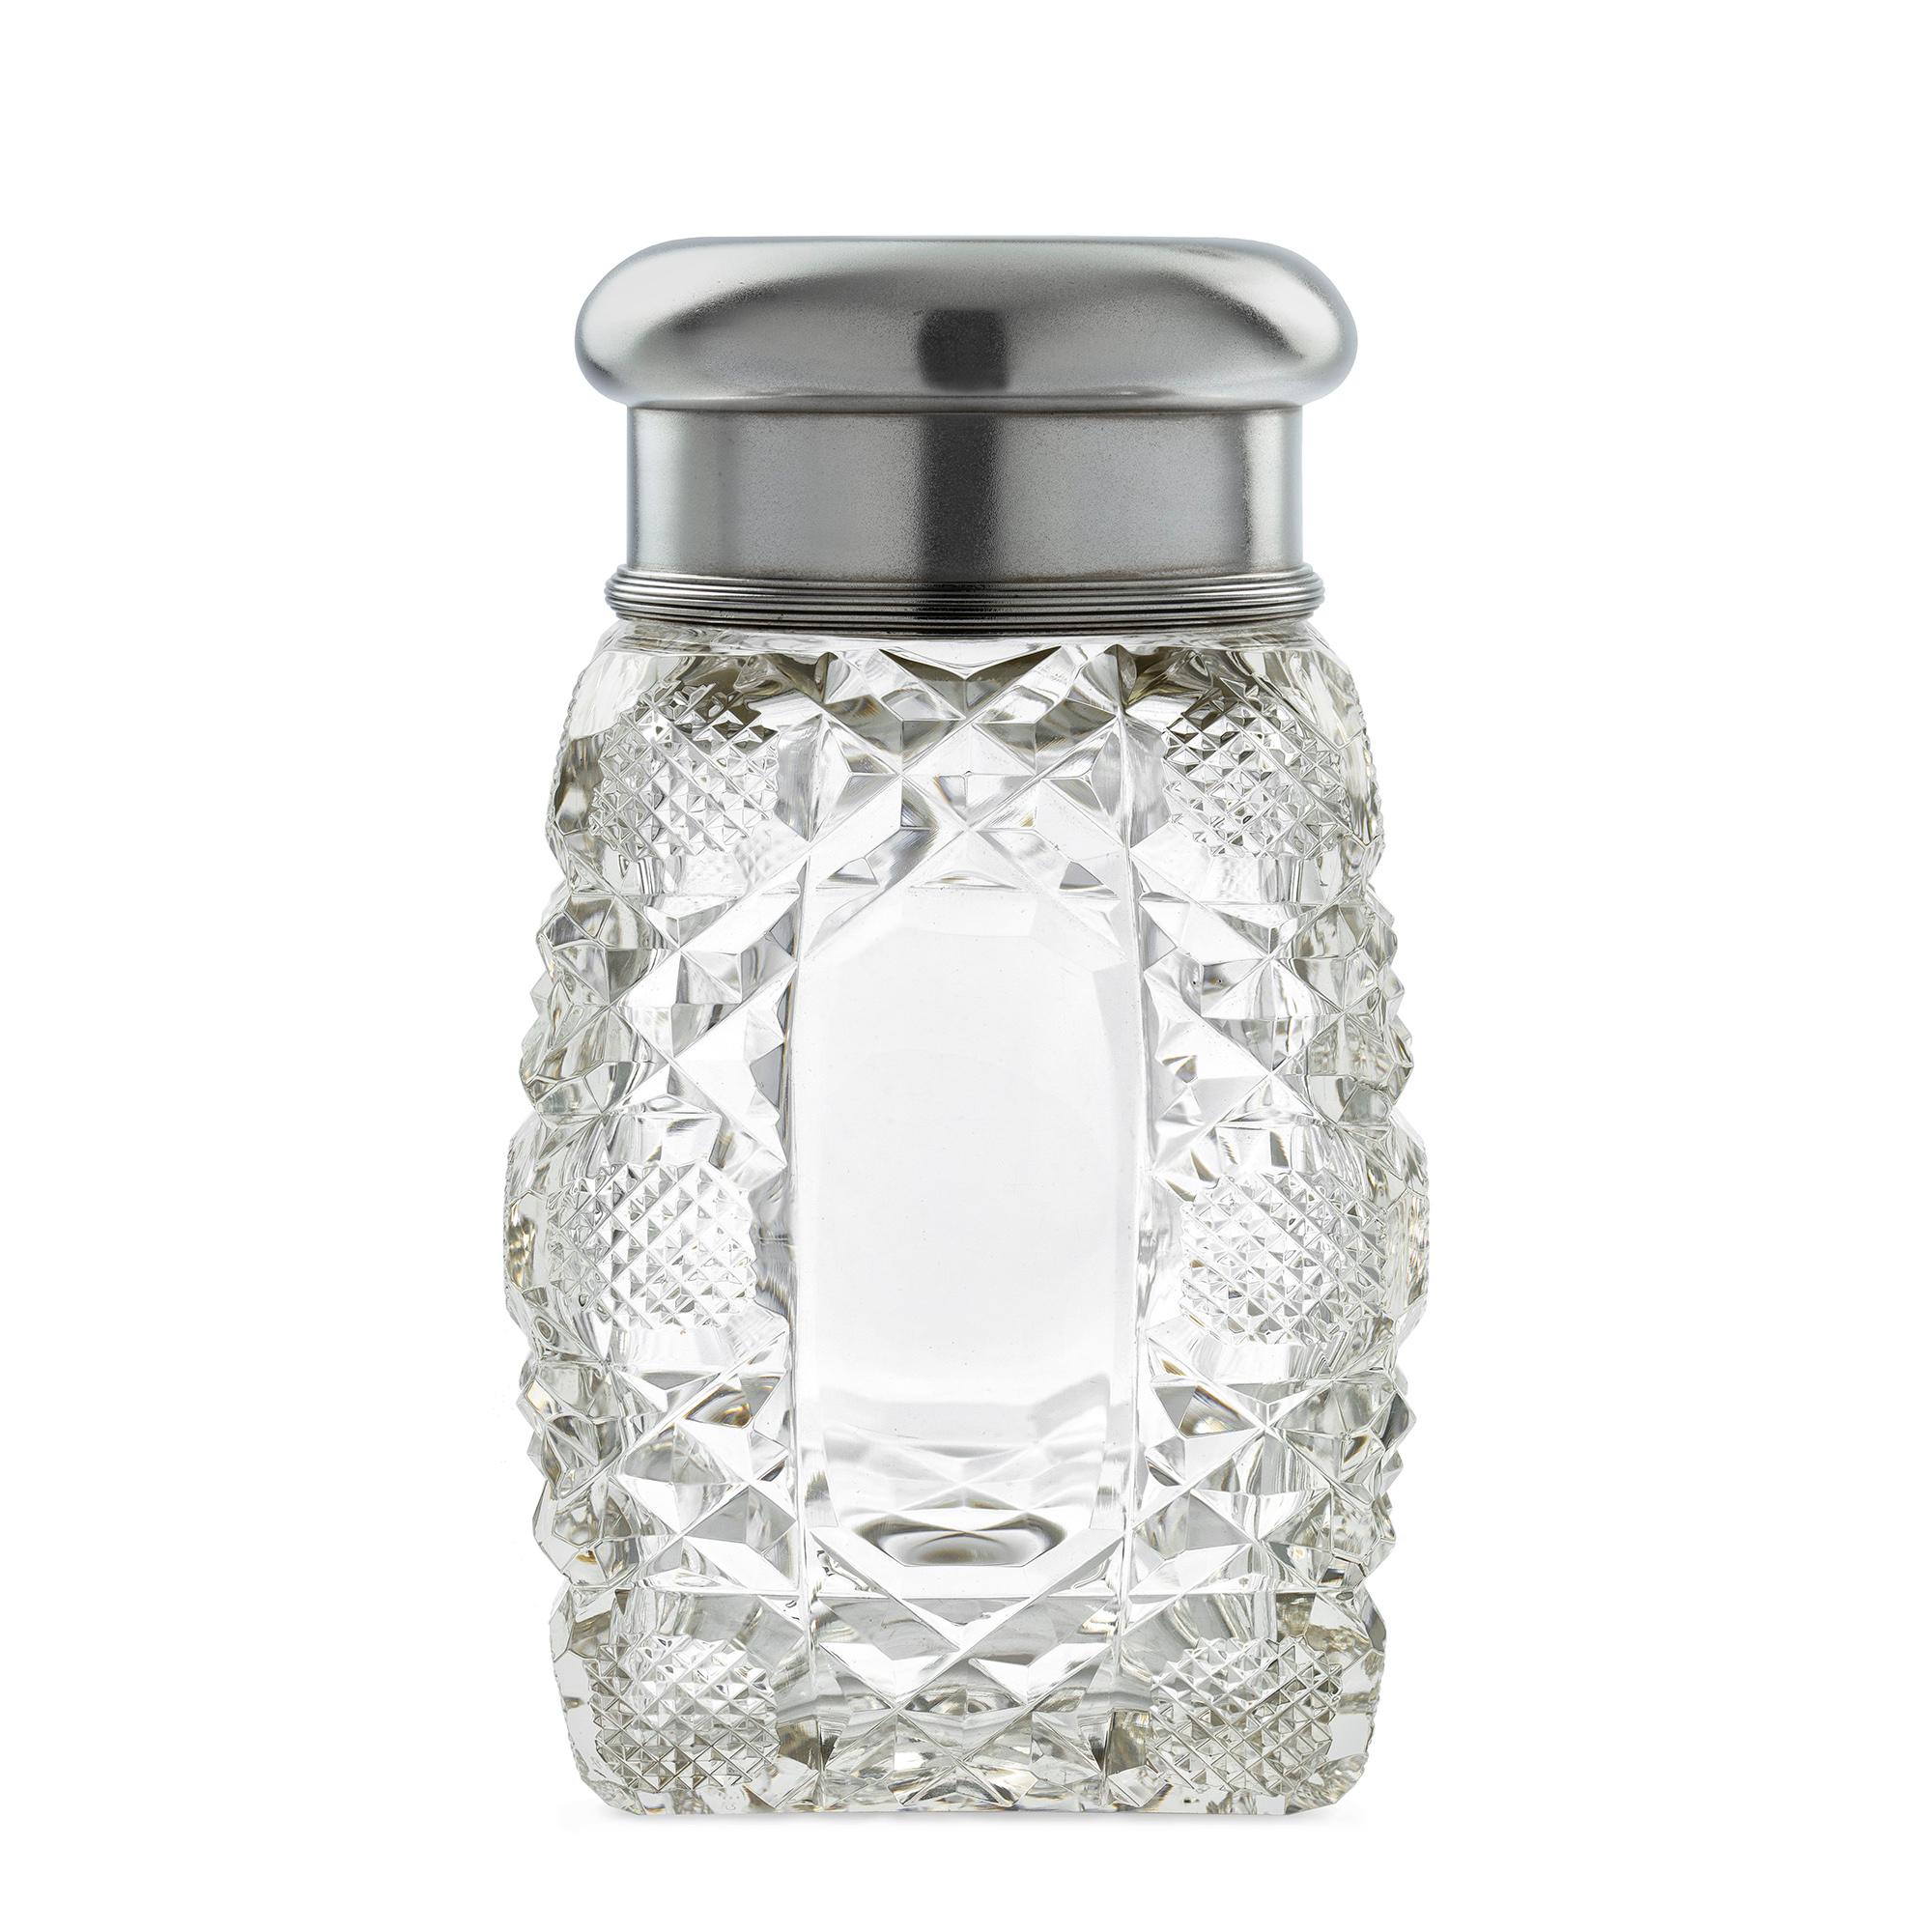 Fabergé-Glasflasche mit Silberdeckel, bestehend aus einer tonnenförmigen, geschliffenen Glasflasche, einem Glasstopfen mit rechteckigem Abschluss, einem äußeren Silberdeckel mit gewölbtem Oberteil, das in einen geformten, gerippten Boden übergeht,